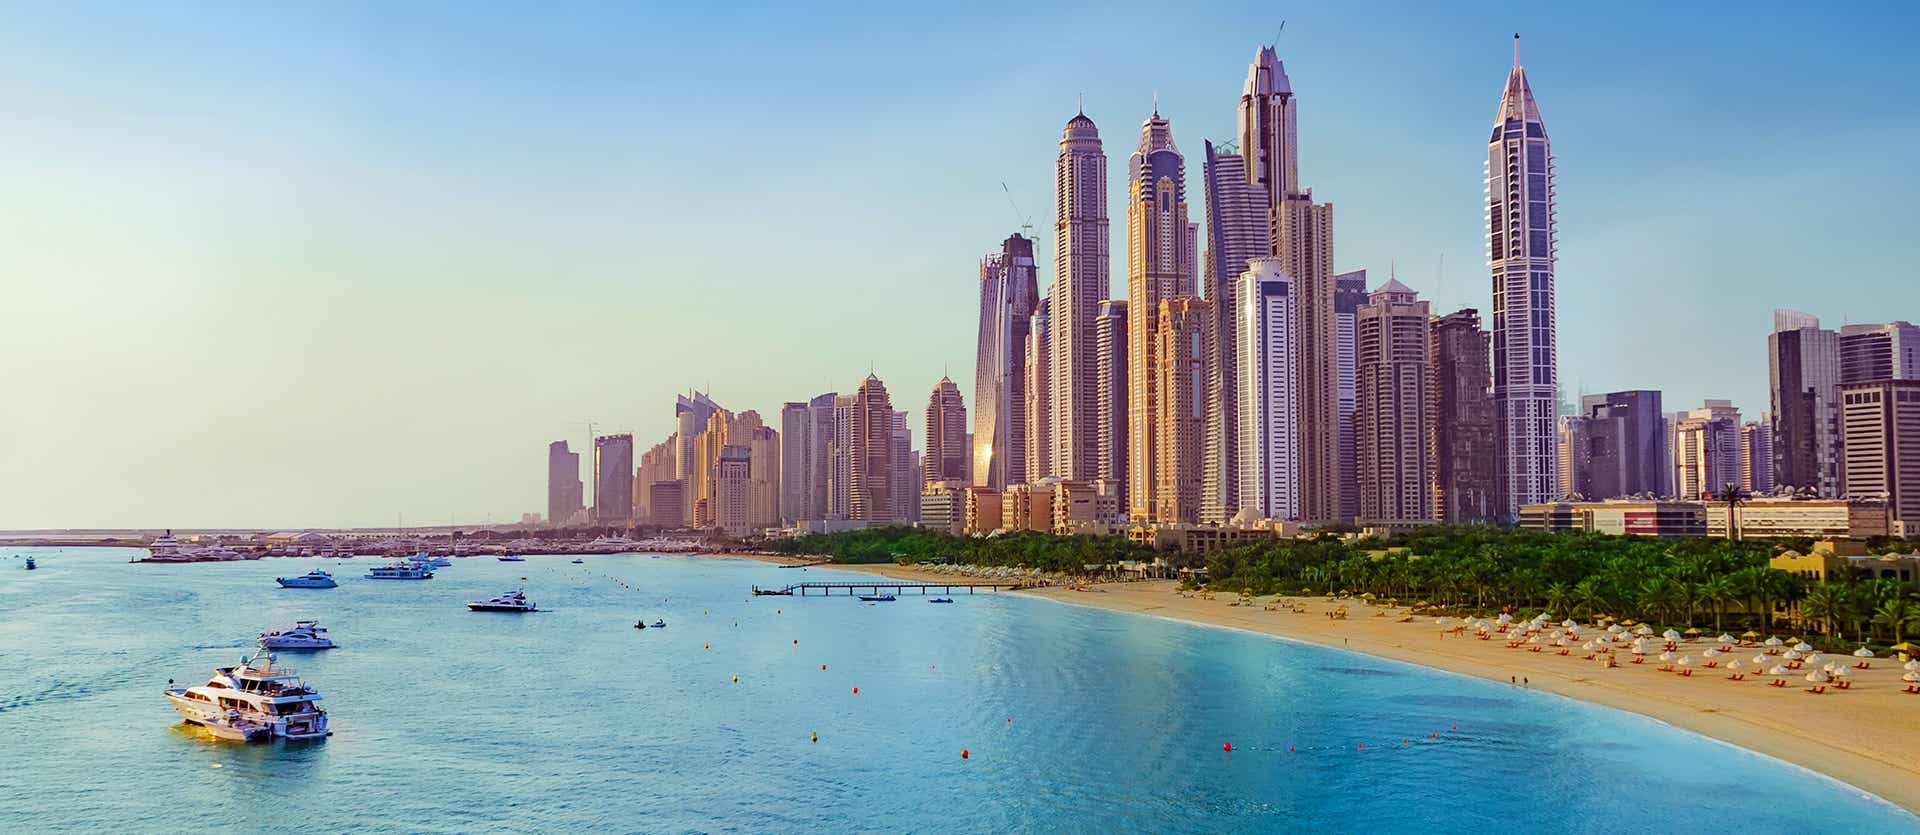 Dubai Marina <span class="iconos separador"></span> Emiratos Árabes Unidos